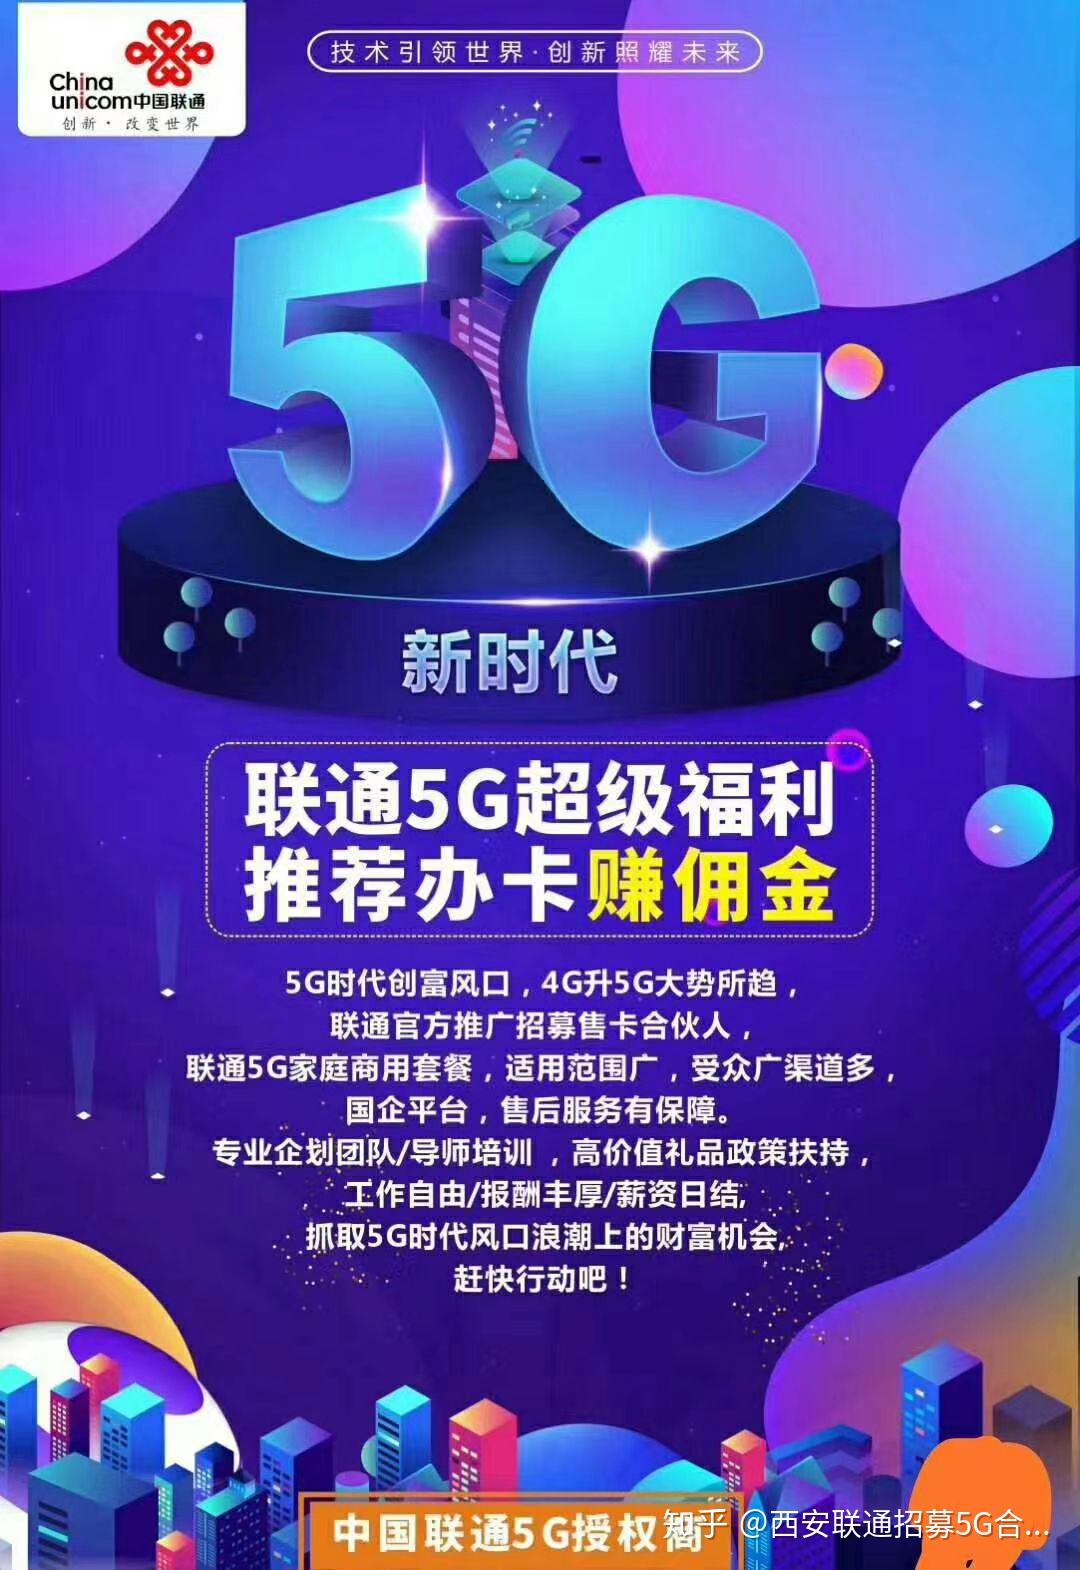 5G 技术在联通手机广告中的独特魅力与创新表现  第5张